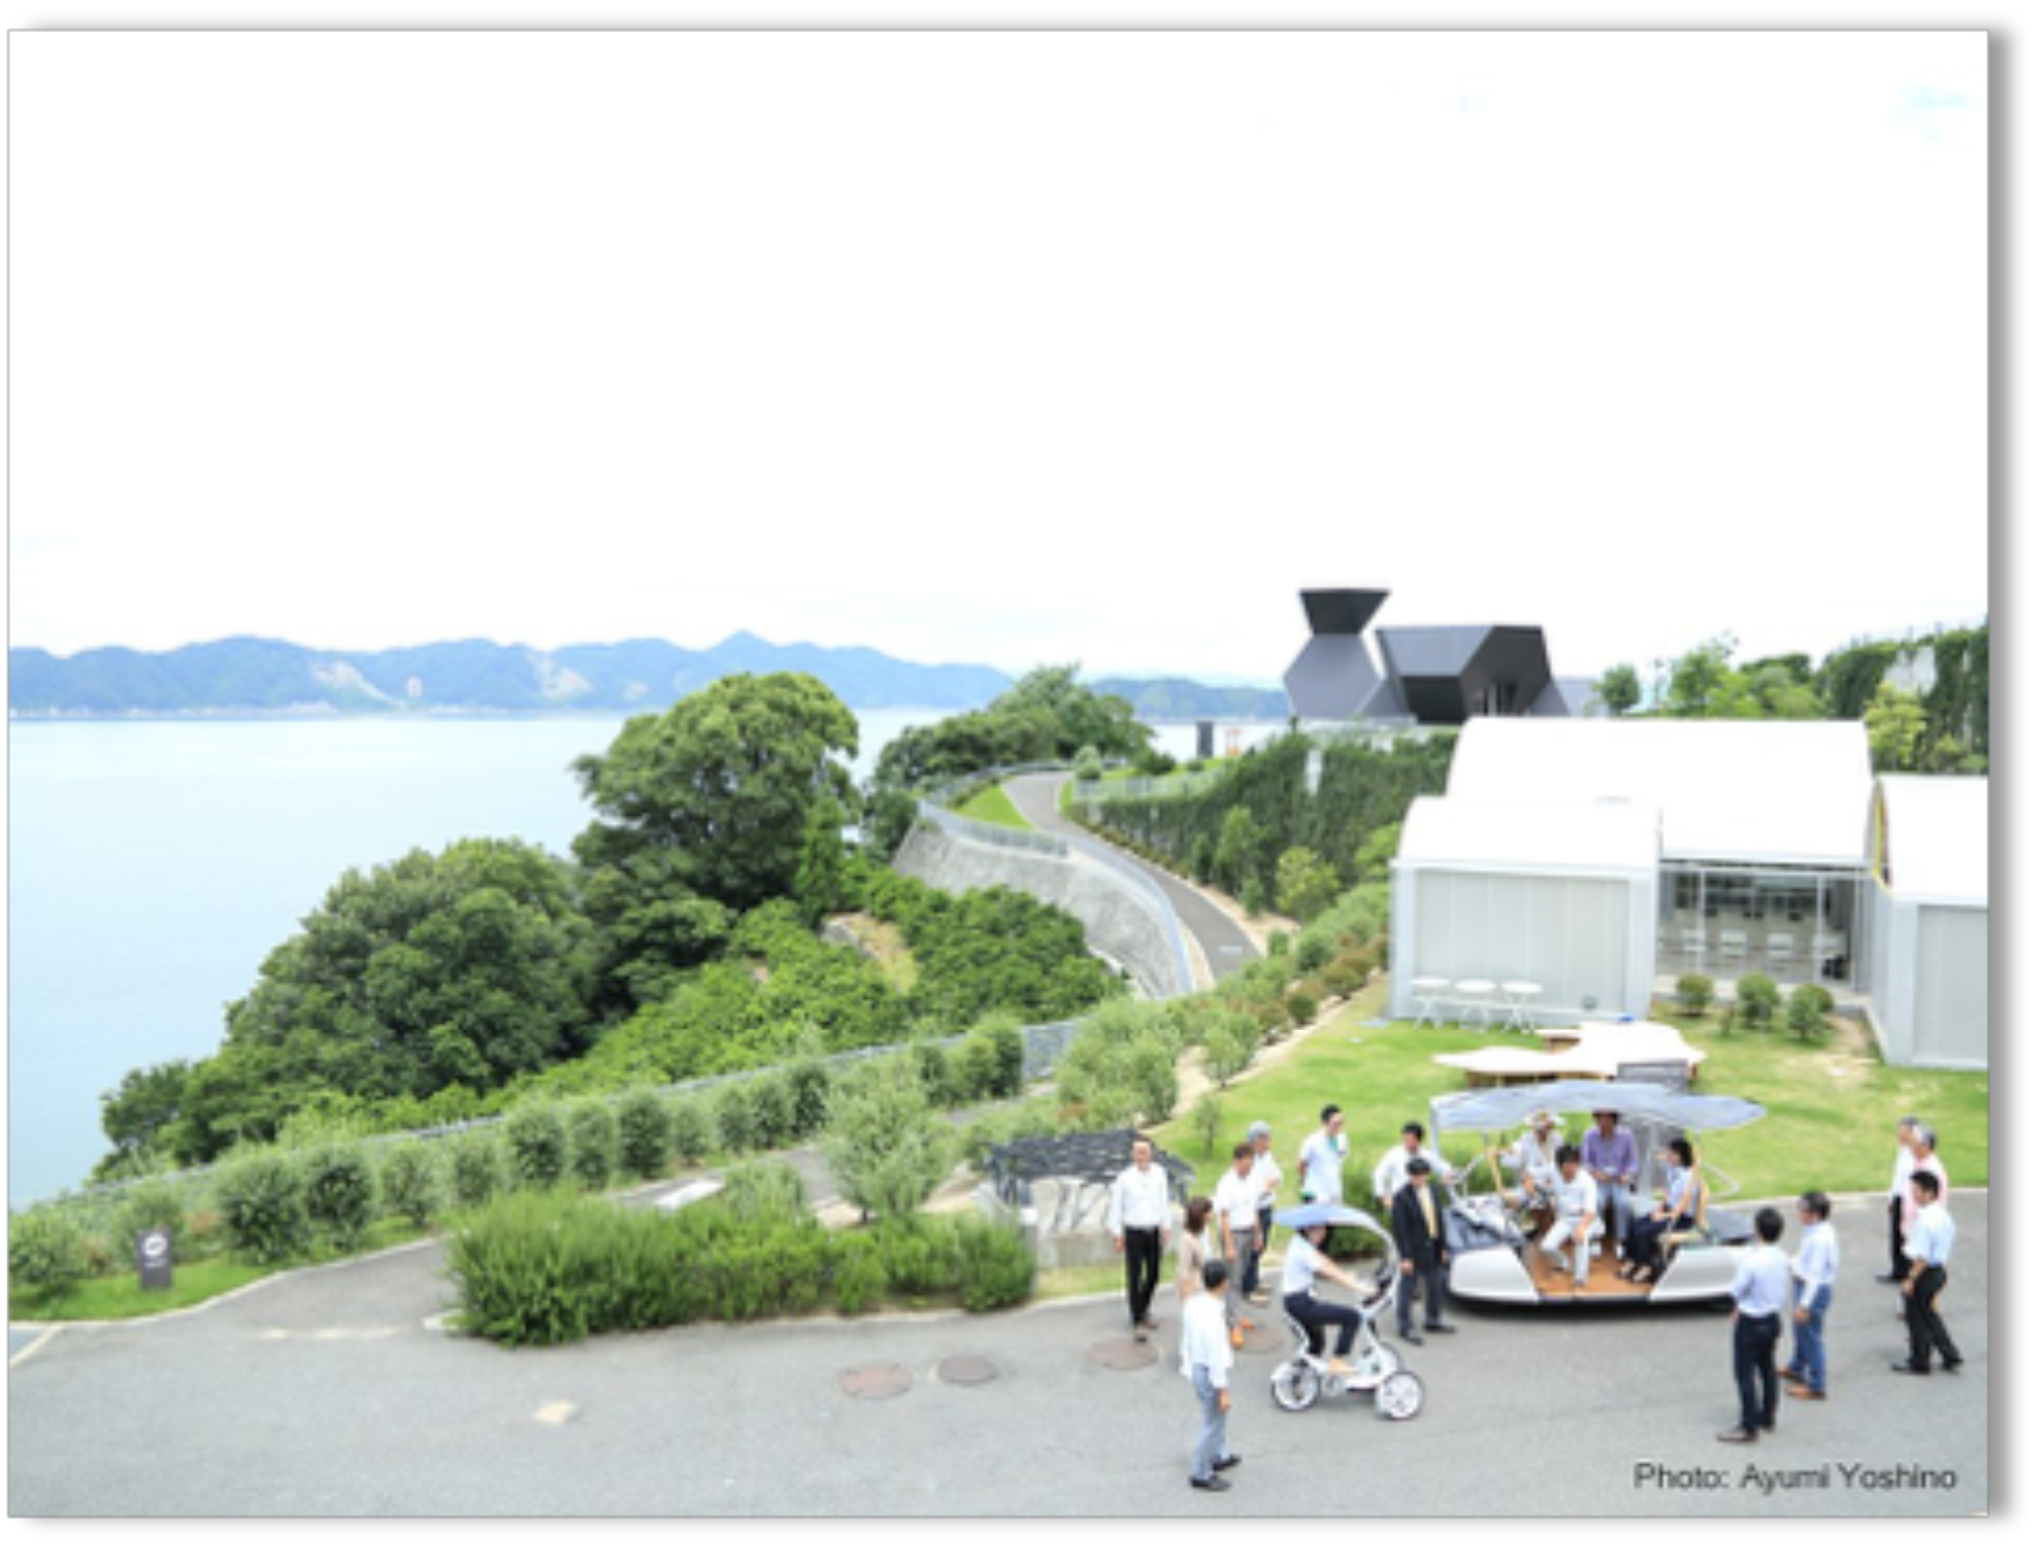 「美しい大三島を元気にするために」スライドより (Photo : Ayumi Yoshino)